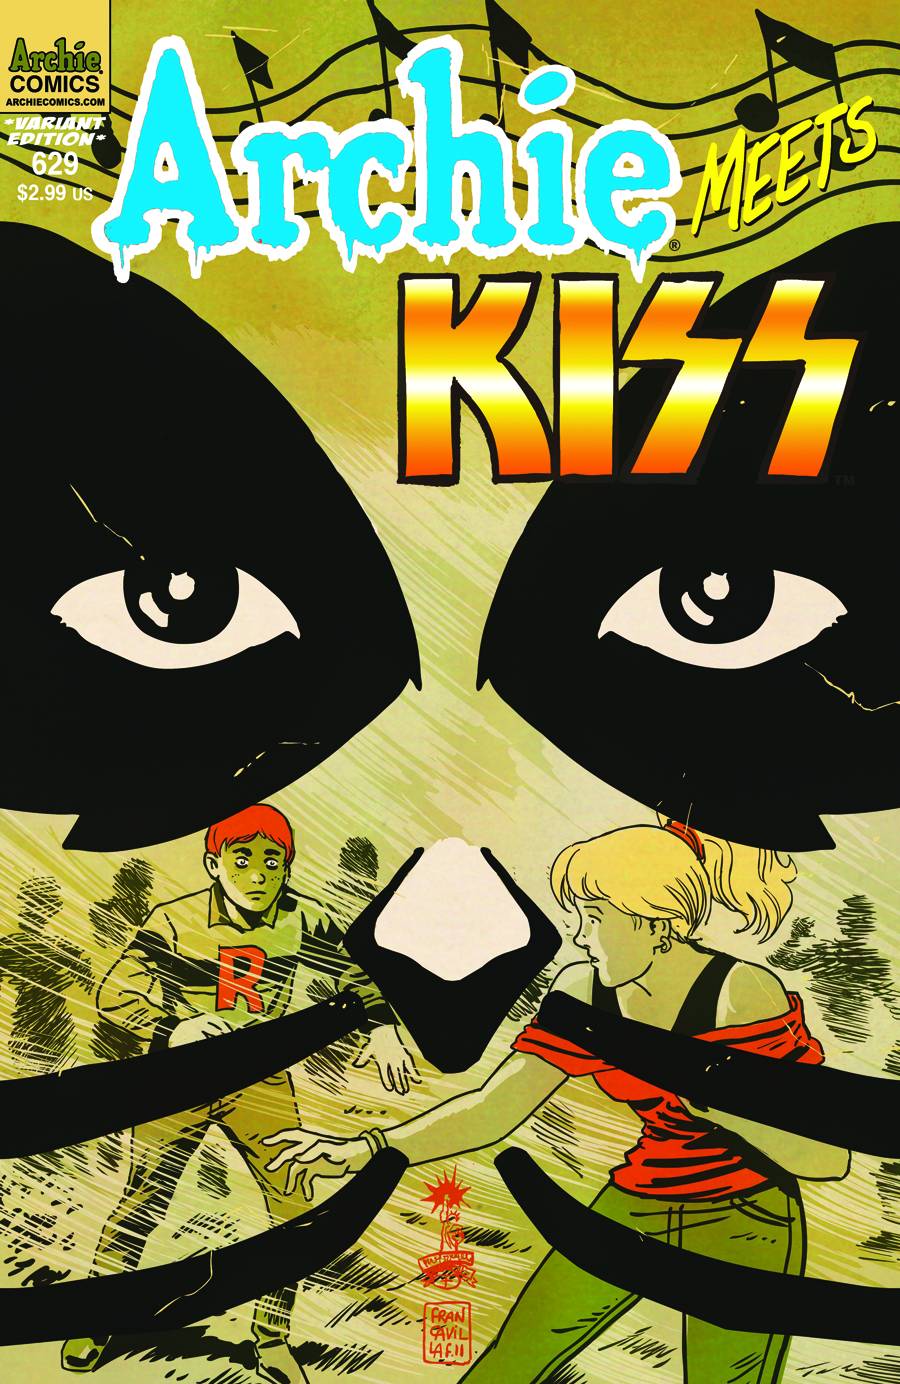 Archie #629 (Archie Meets Kiss Part 3 ) Variant Cover